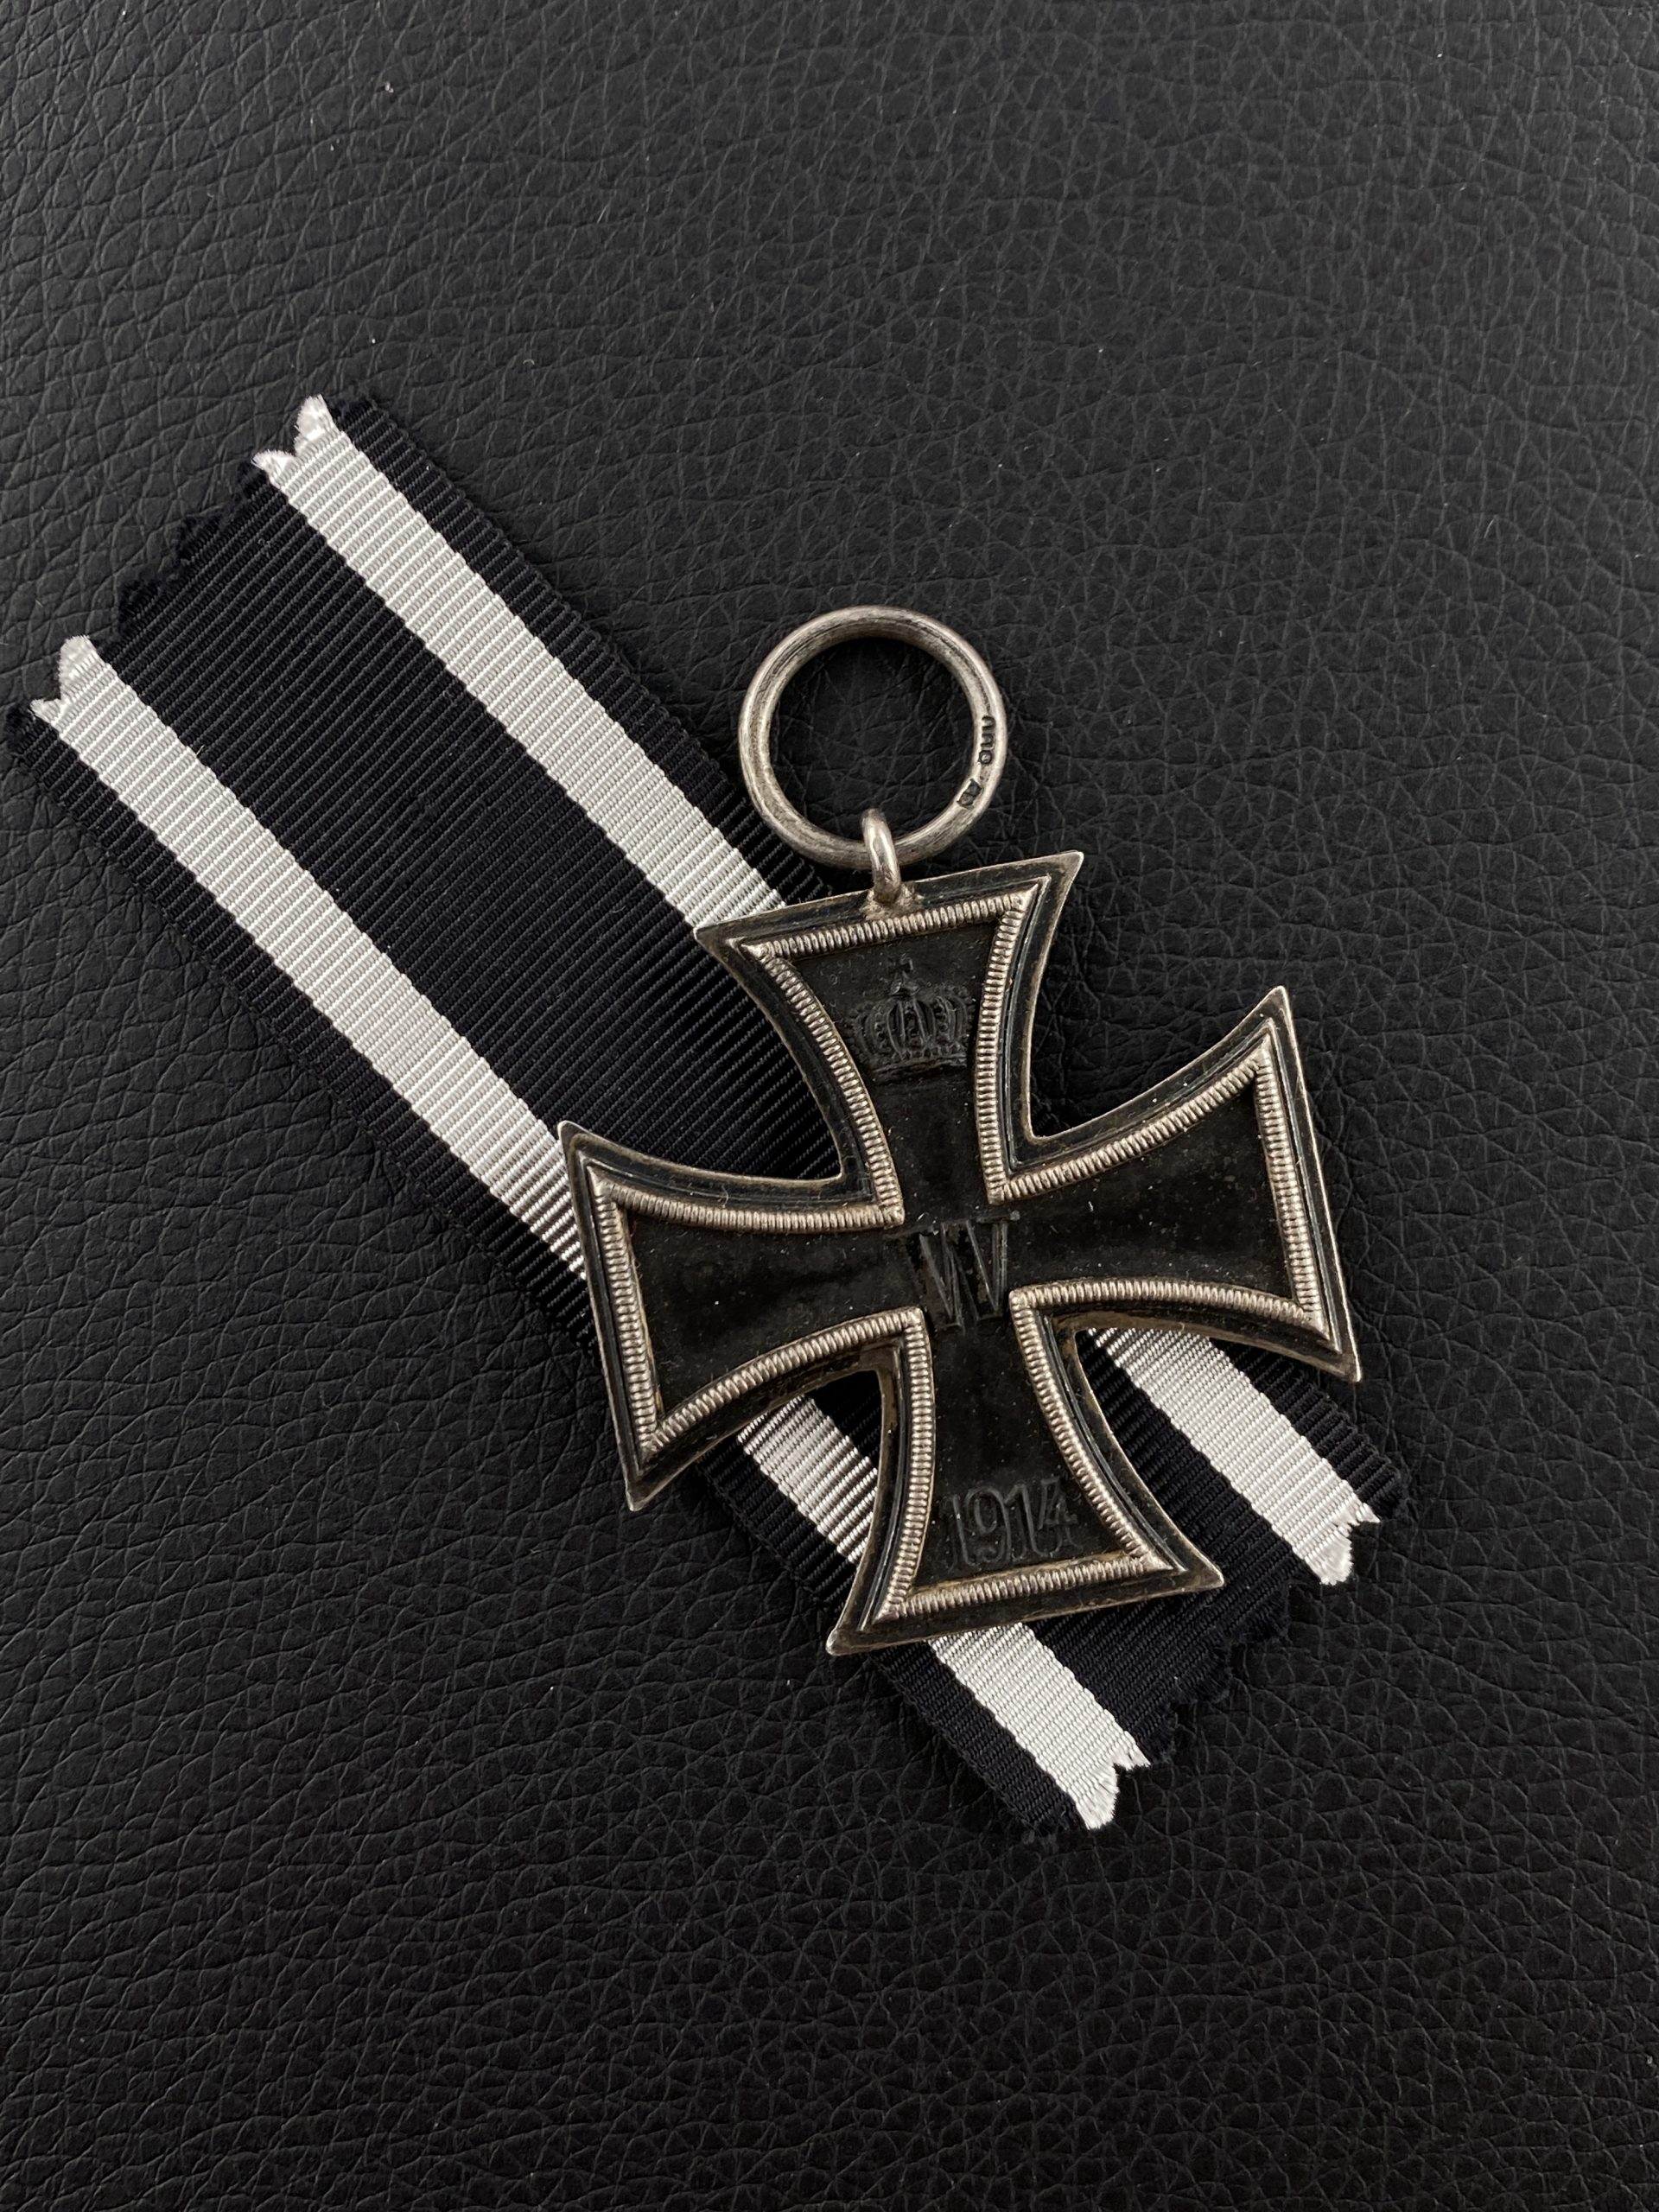 Железный крест 2-го класса 1914 г.